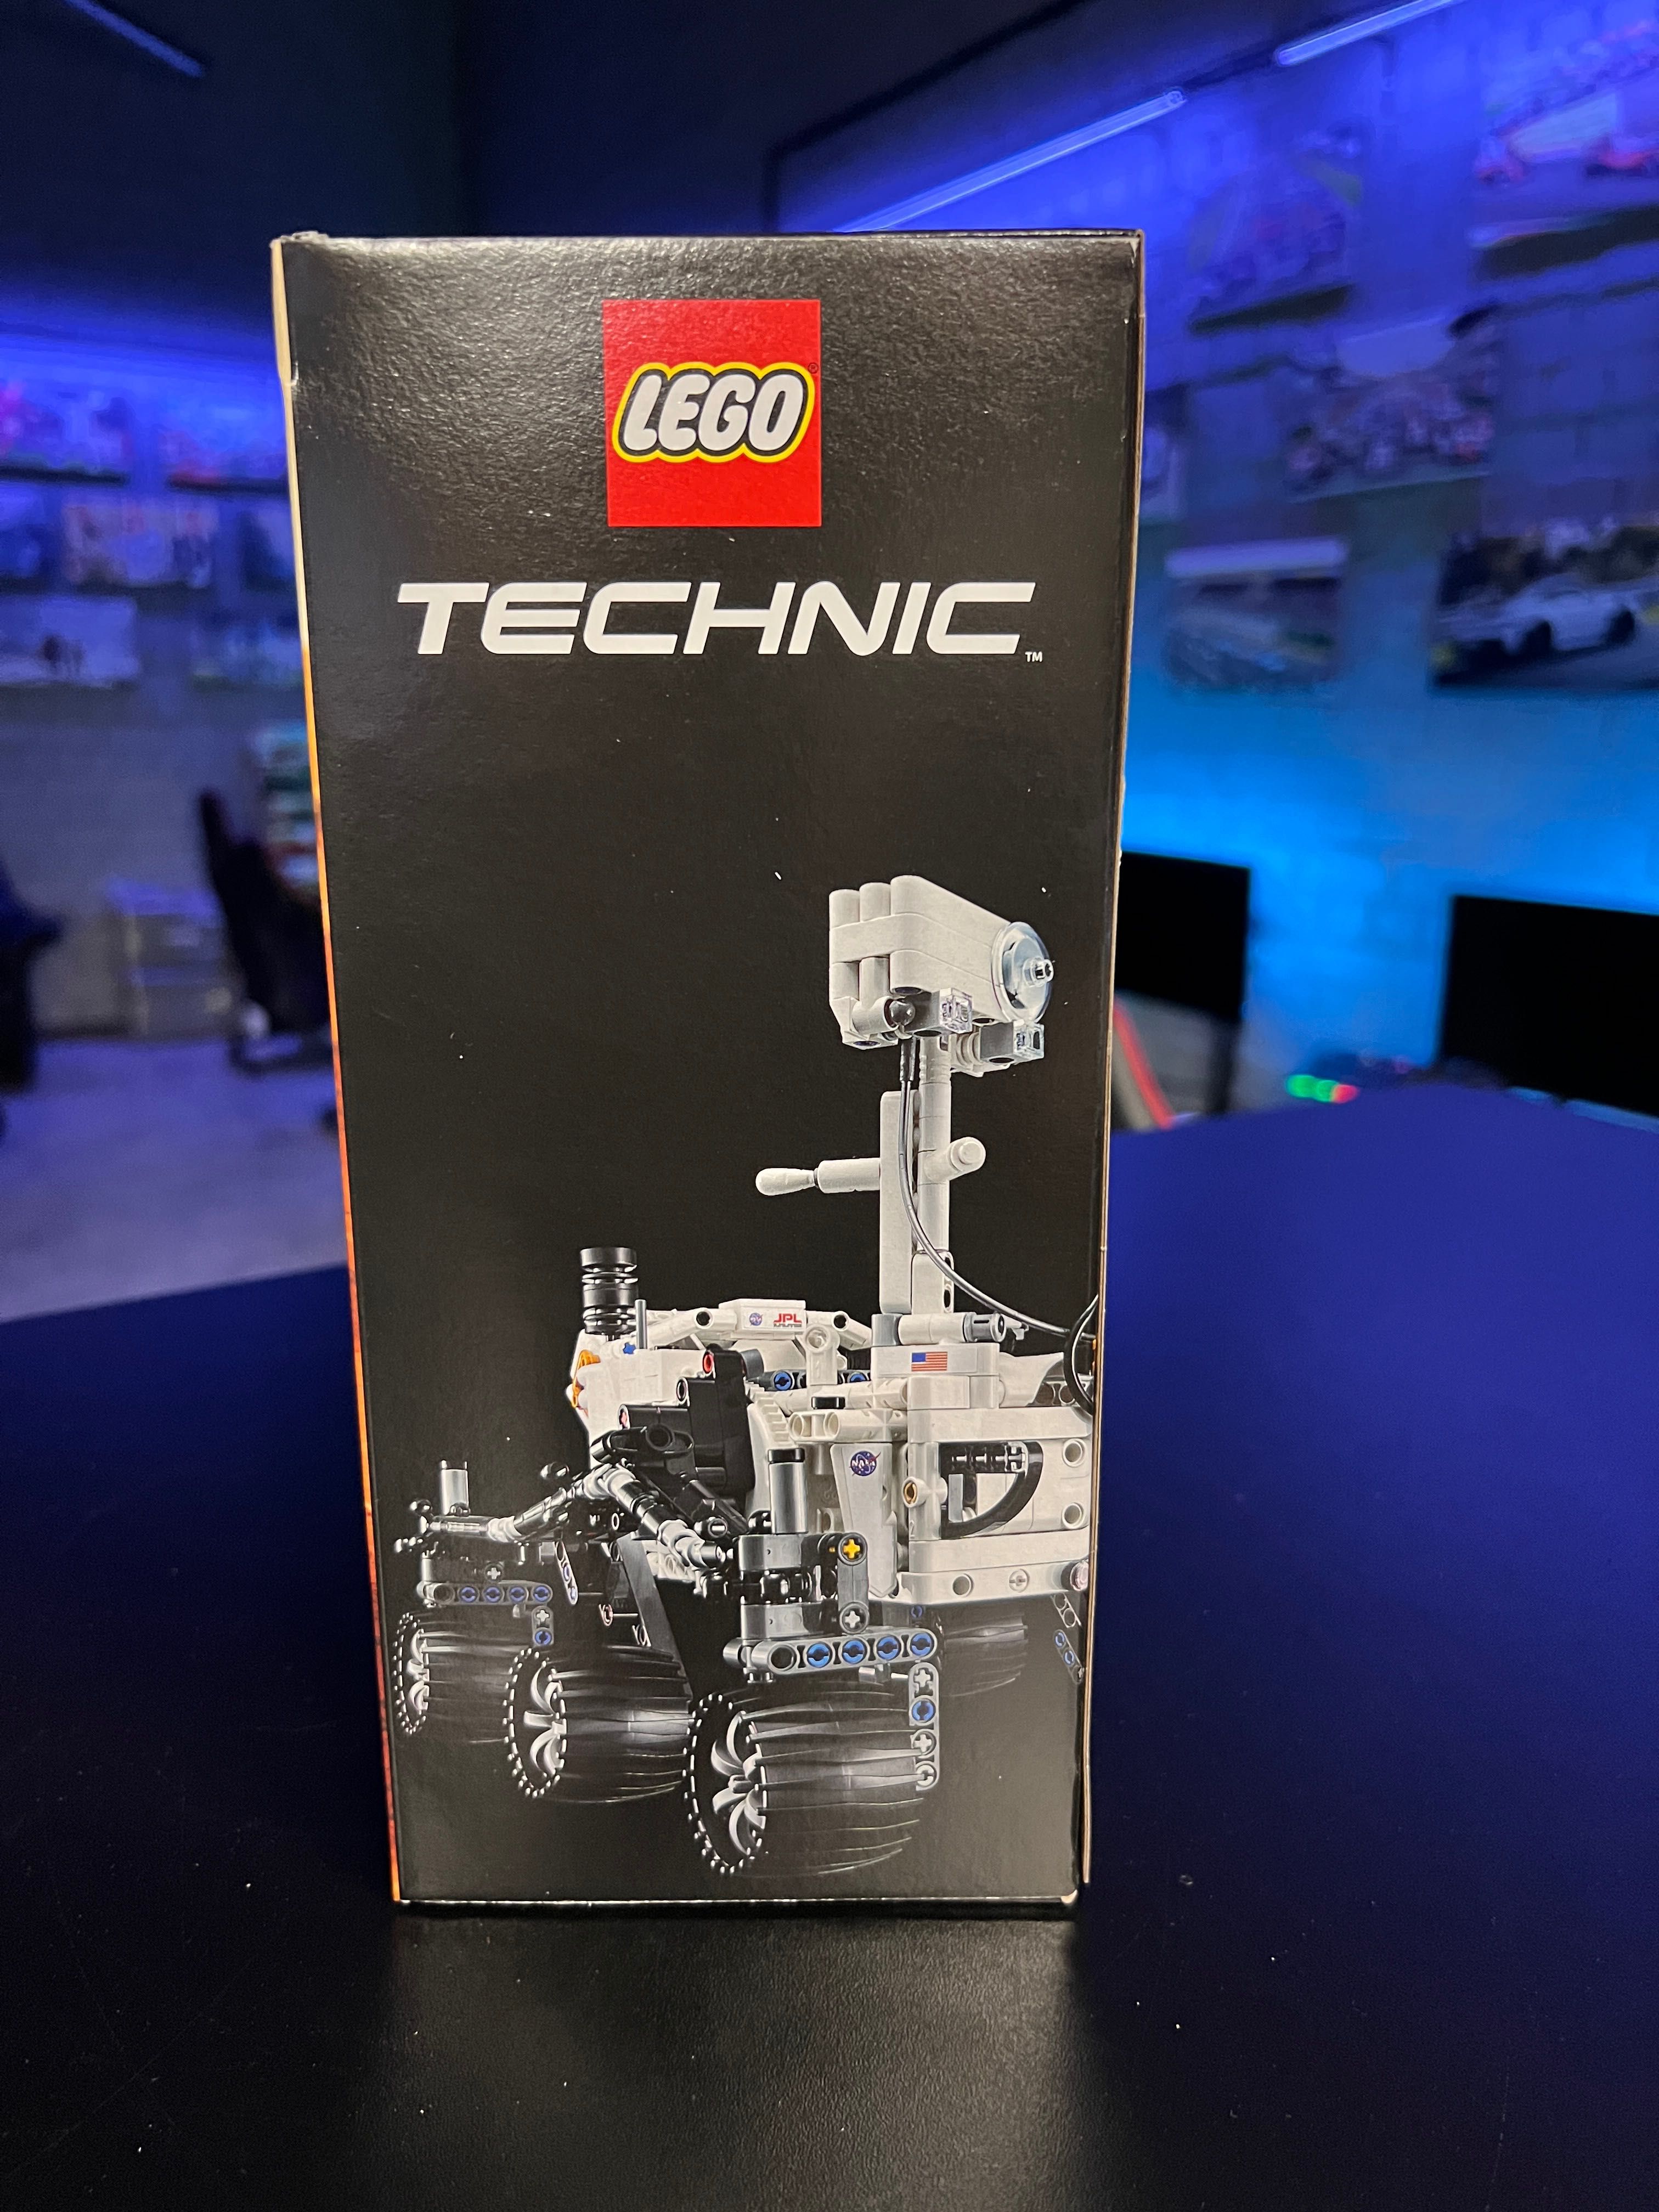 LEGO Technic 42158 NASA Mars Rover Perseverance 1132 деталей Лего